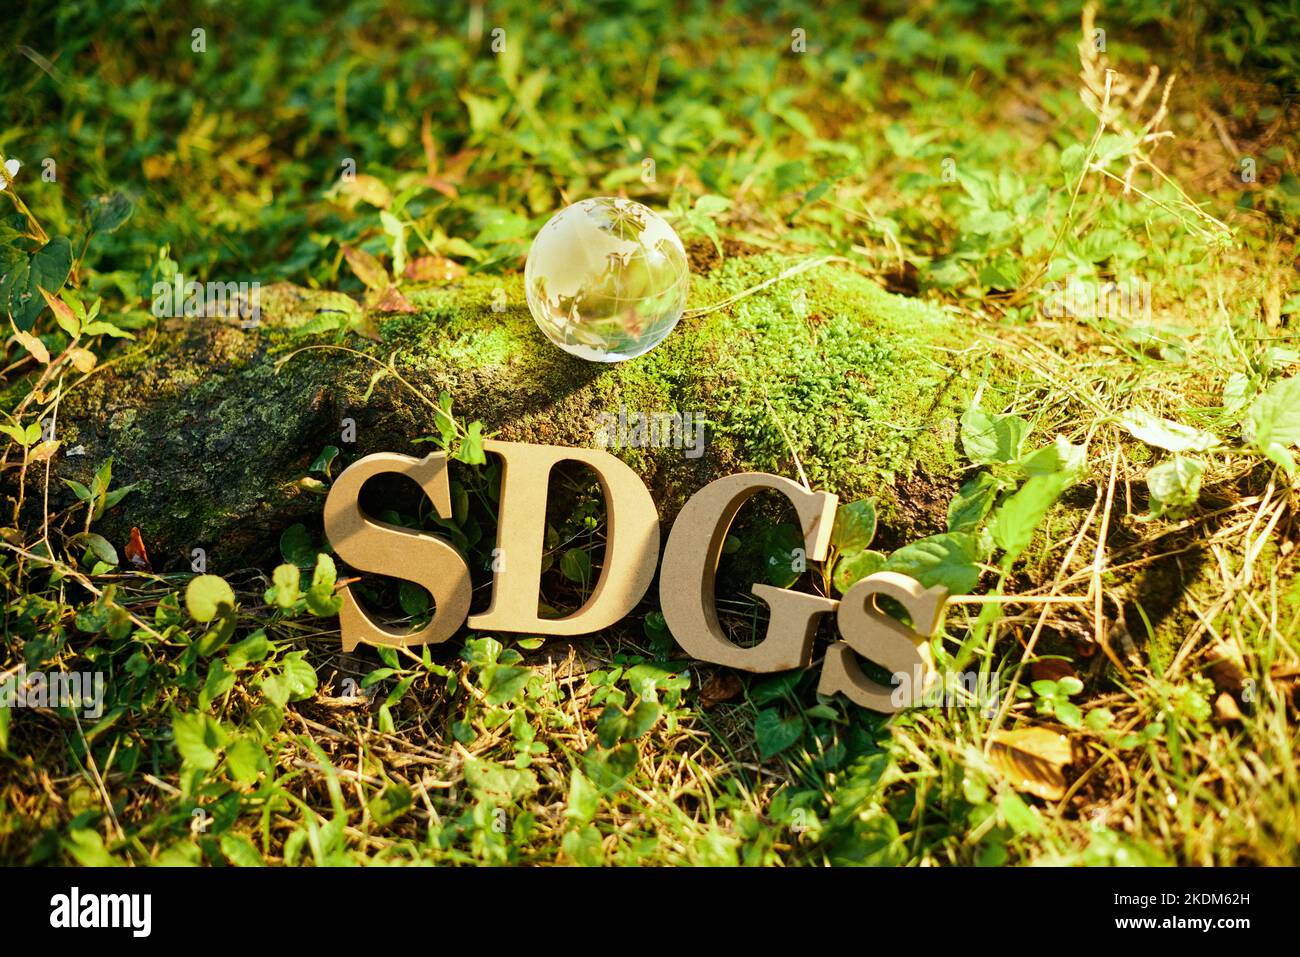 Immagine SDGs Foto Stock